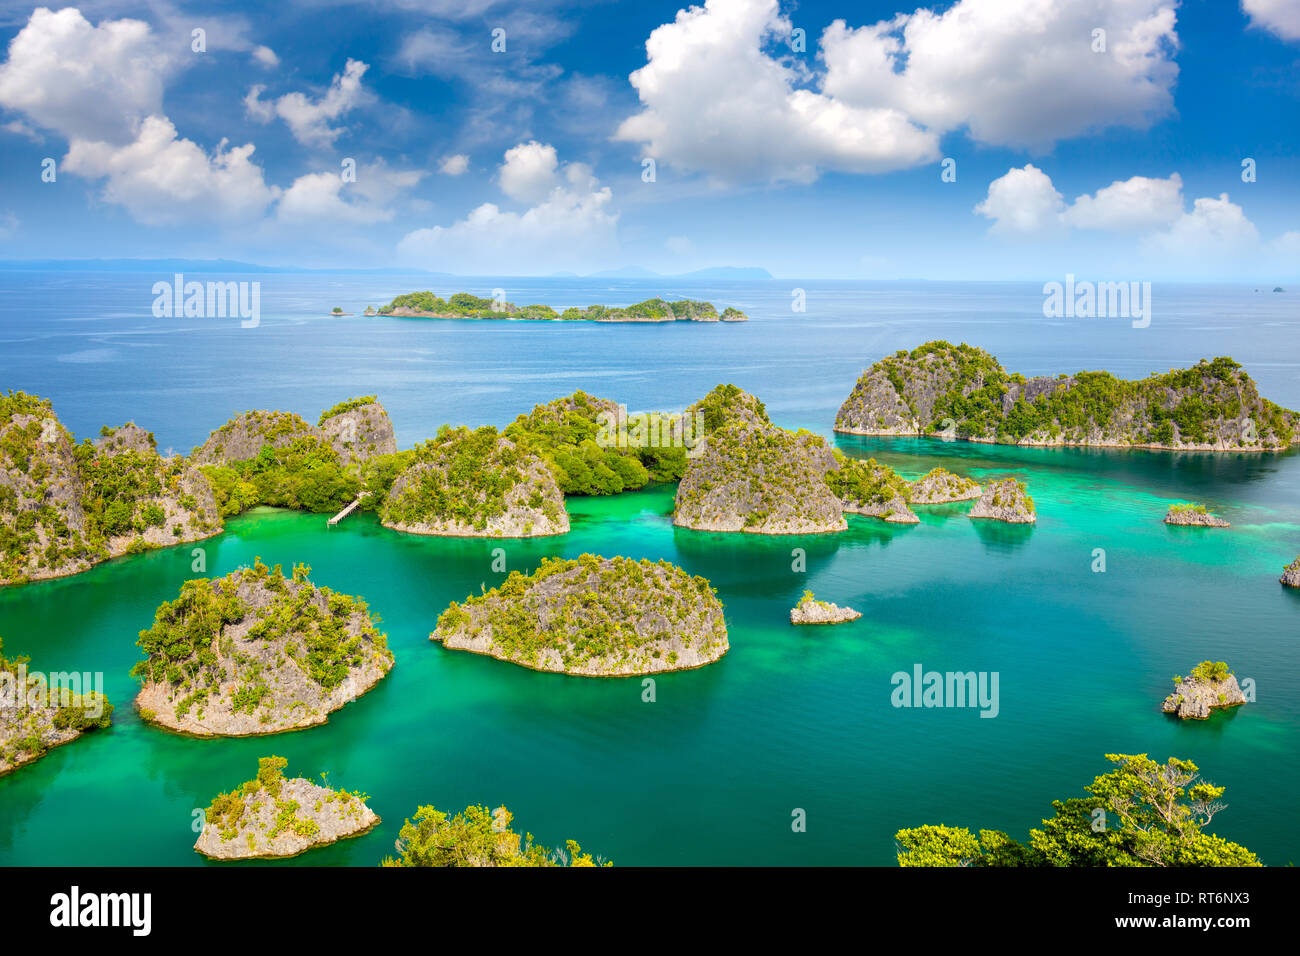 Vista aerea del paradiso isole nel mare turchese con isole di barriera corallina costiera, belle lagune. Indonesia Foto Stock